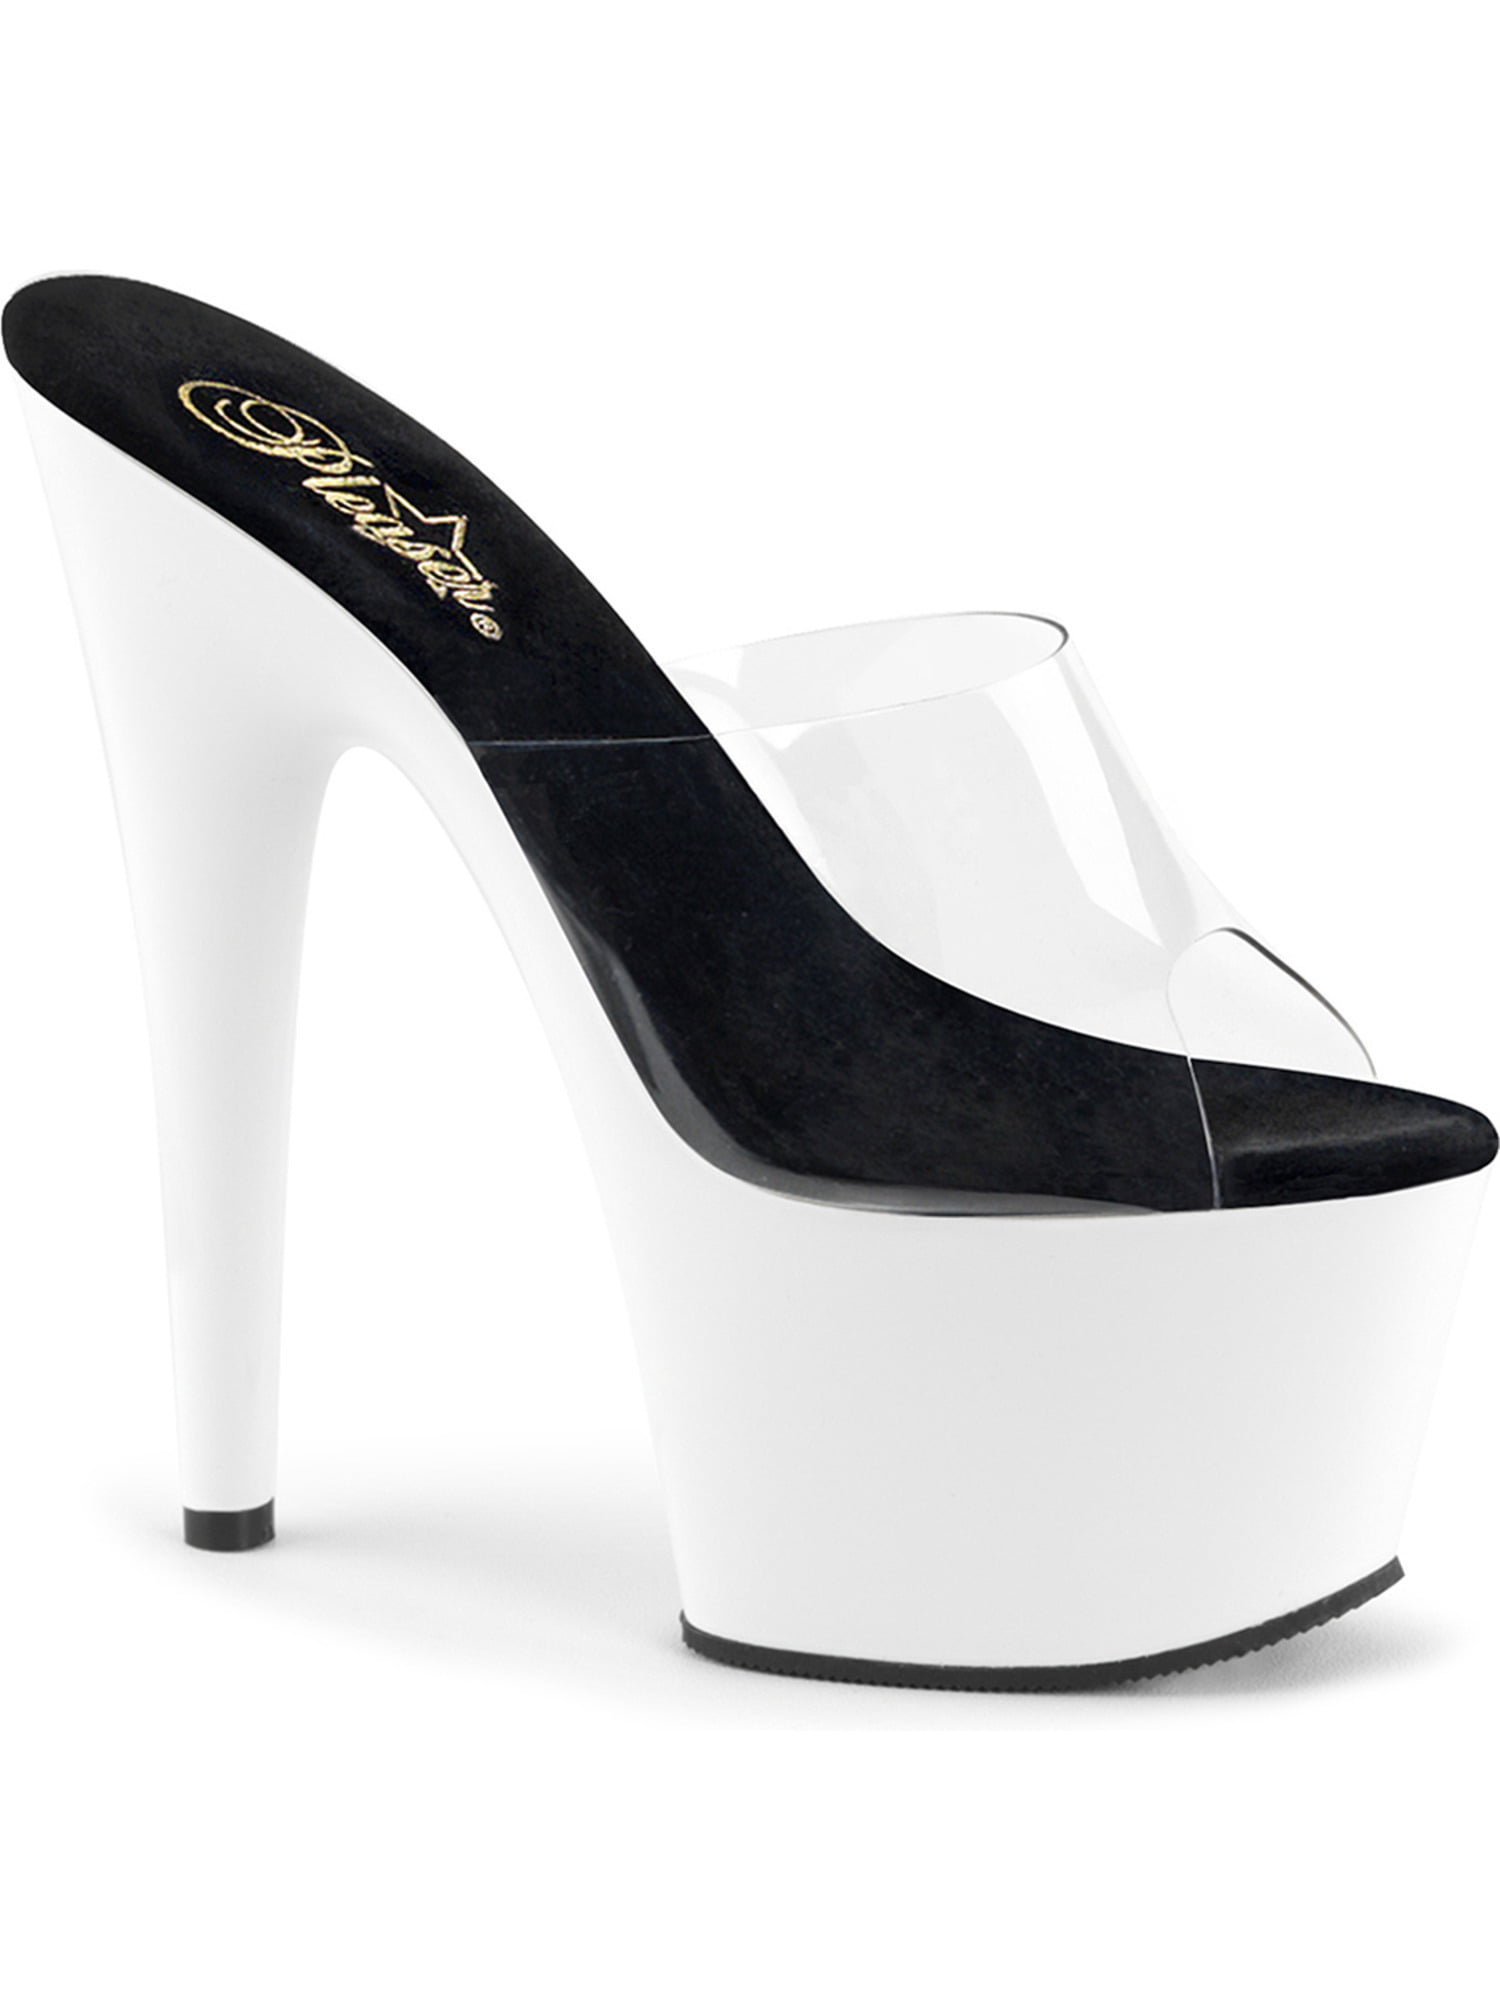 white slide on heels